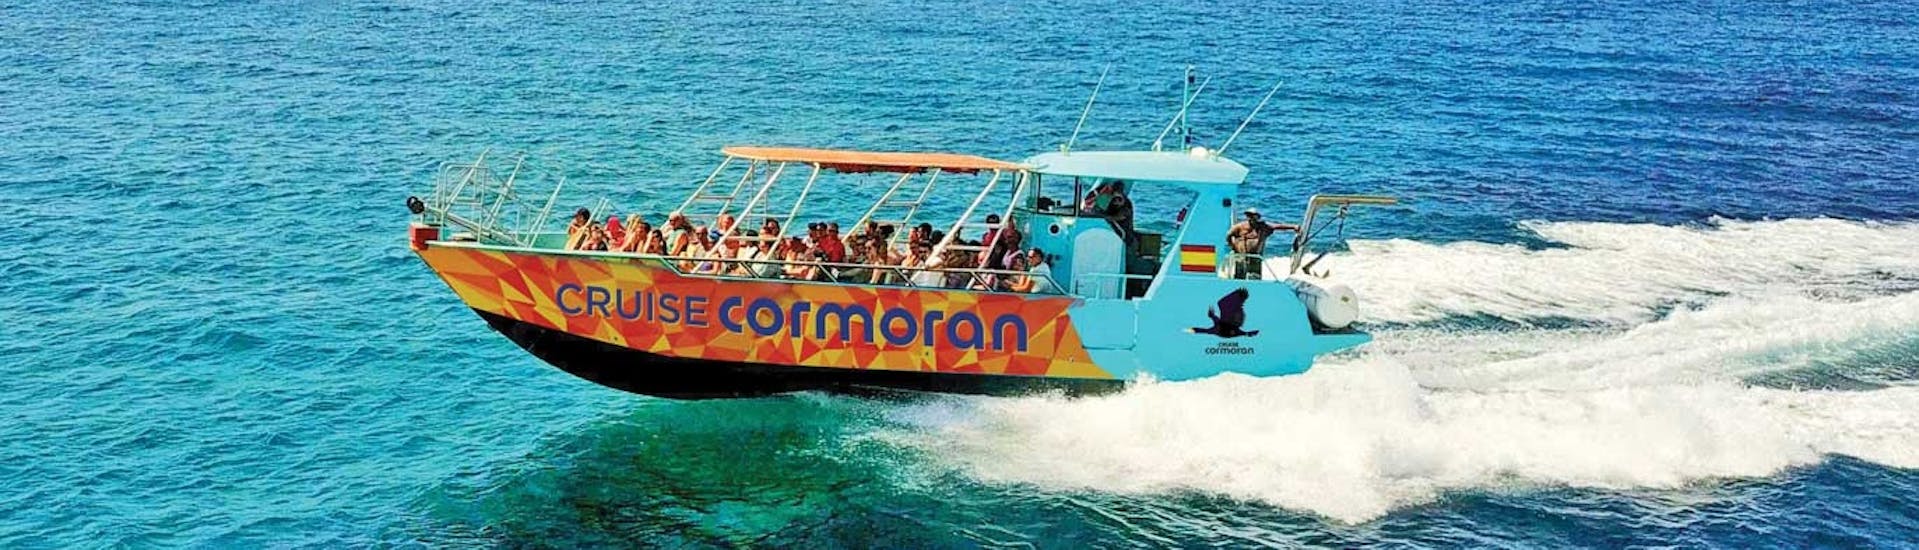 Gita in barca da Palma di Maiorca a Cabrera Island con bagno in mare e visita turistica.